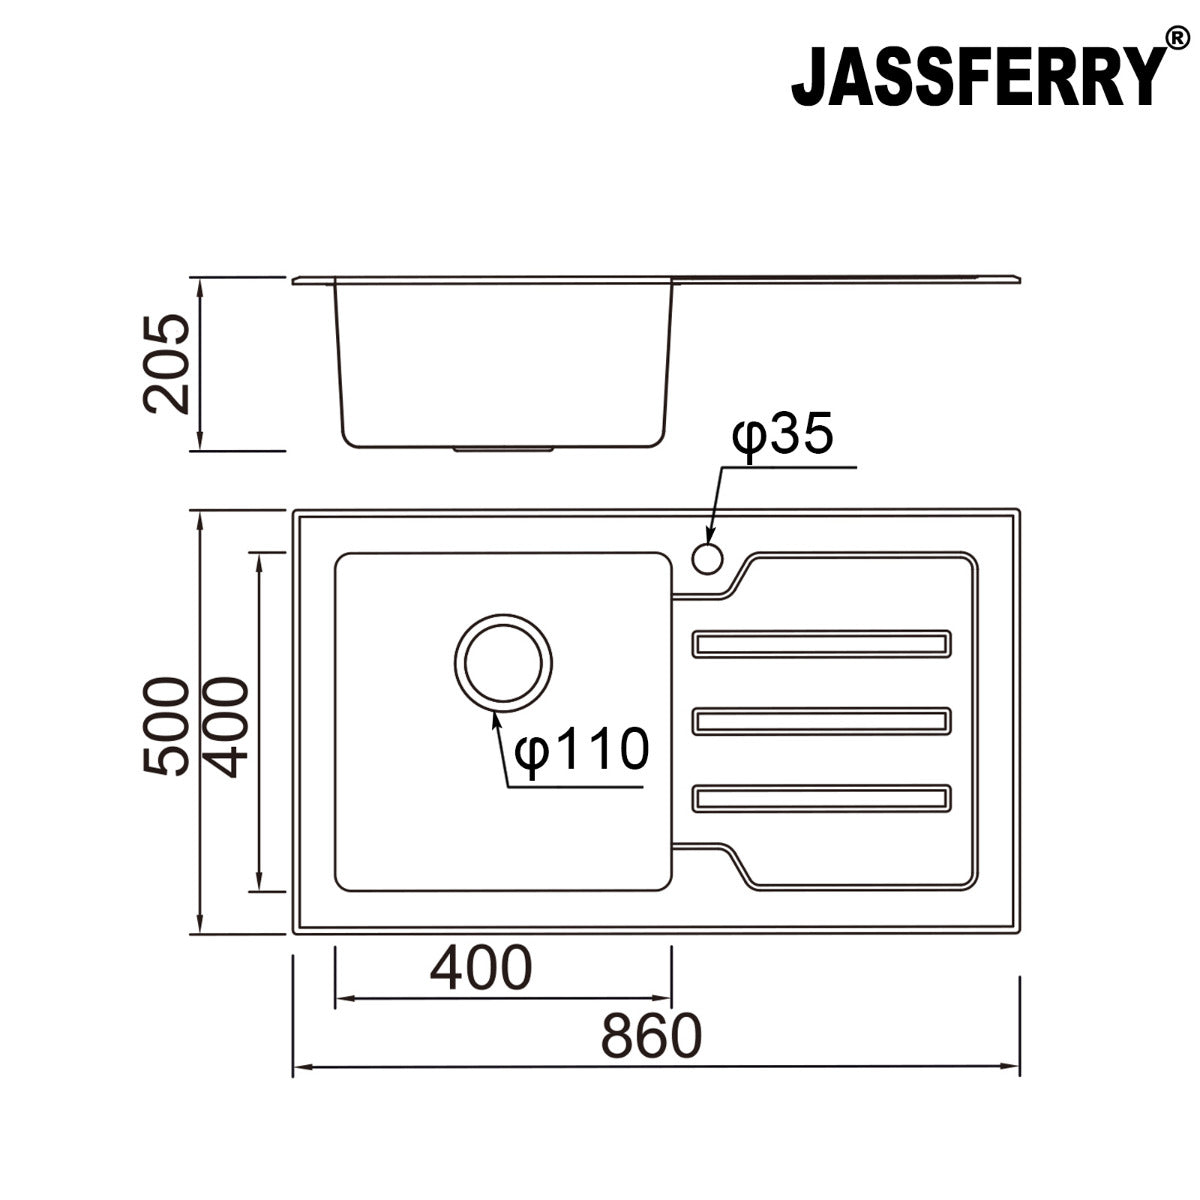 JassferryJASSFERRY Kitchen Sink Stainless Steel Single Bowl Black Glass Righthand DrainerKitchen Sinks